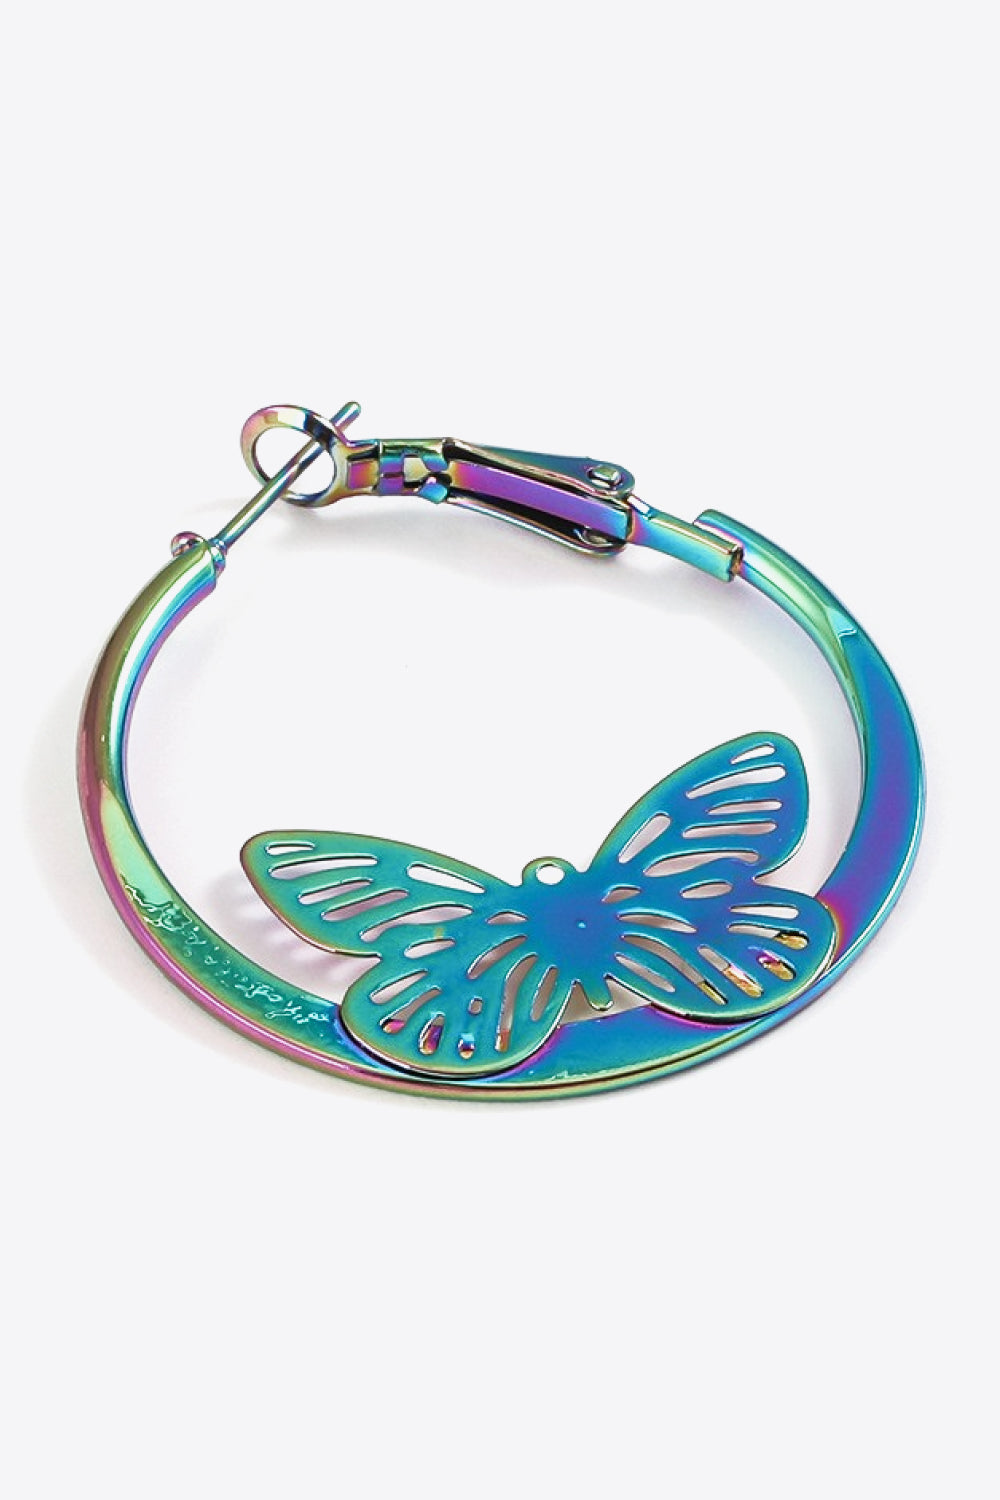 5-Pair Multicolored Butterfly Huggie Earrings Set